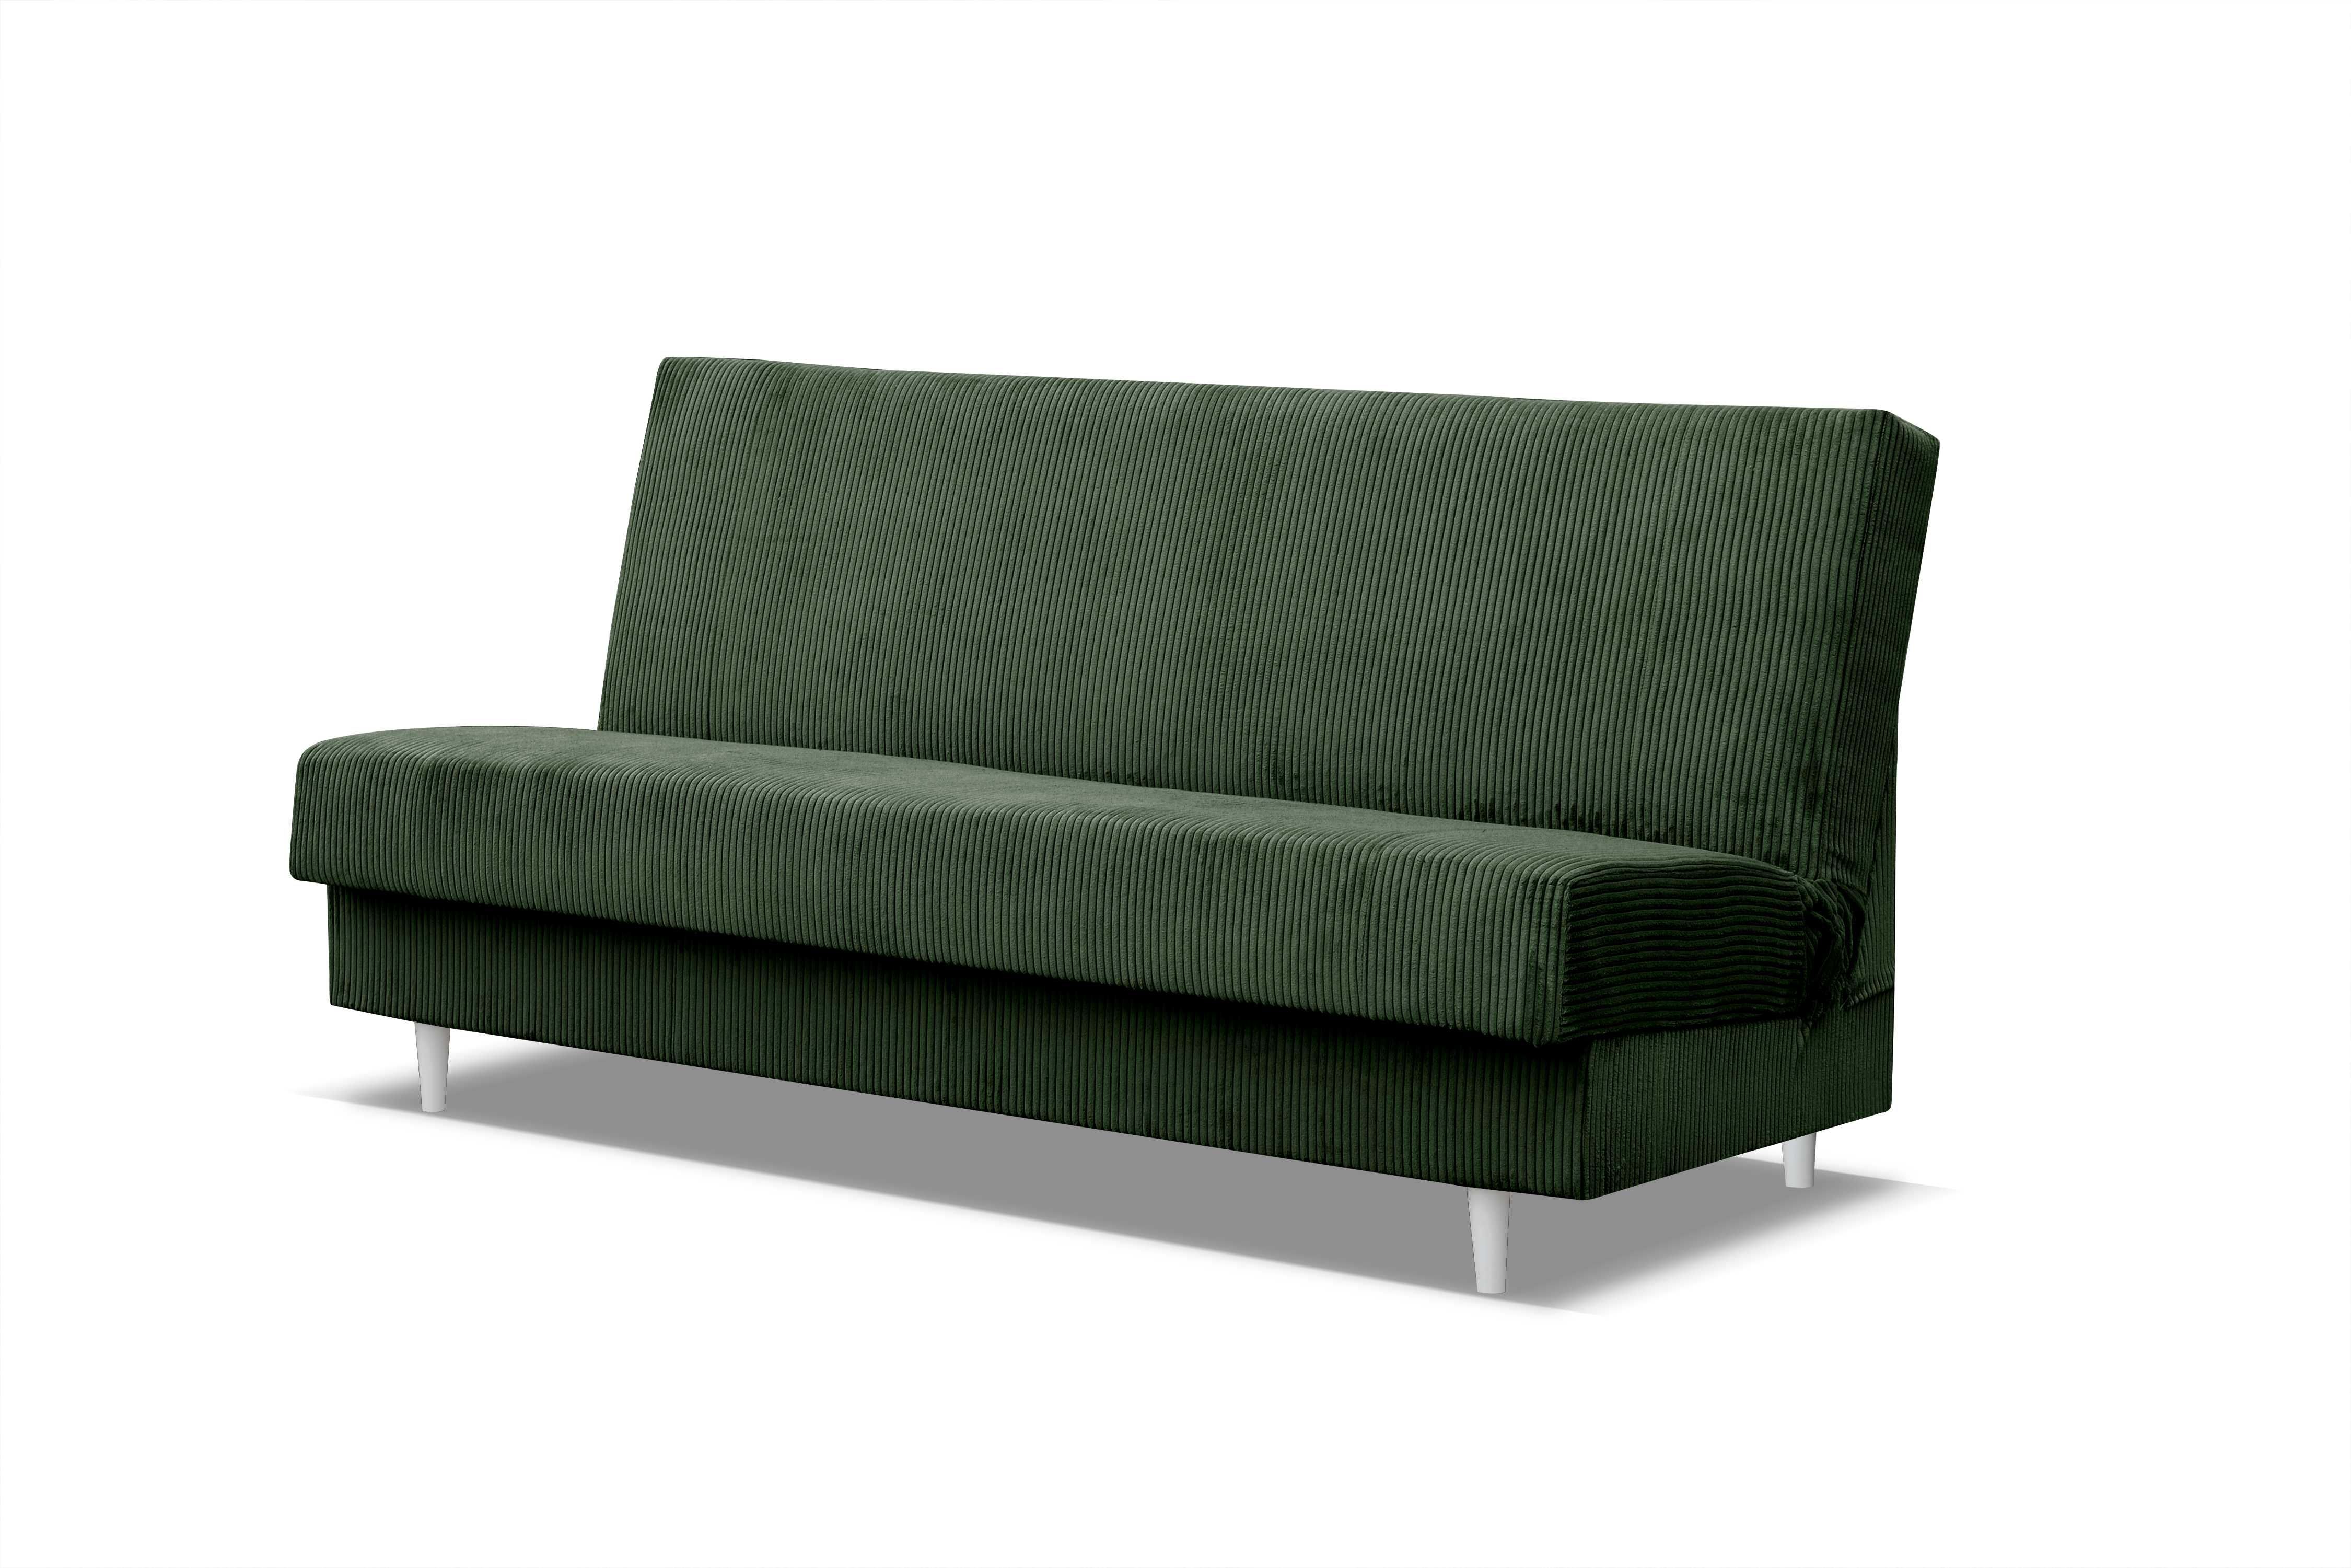 Wersalk Blanka sofa kanapa,łóżko leżanka rozkładana PROMOCJA Producent